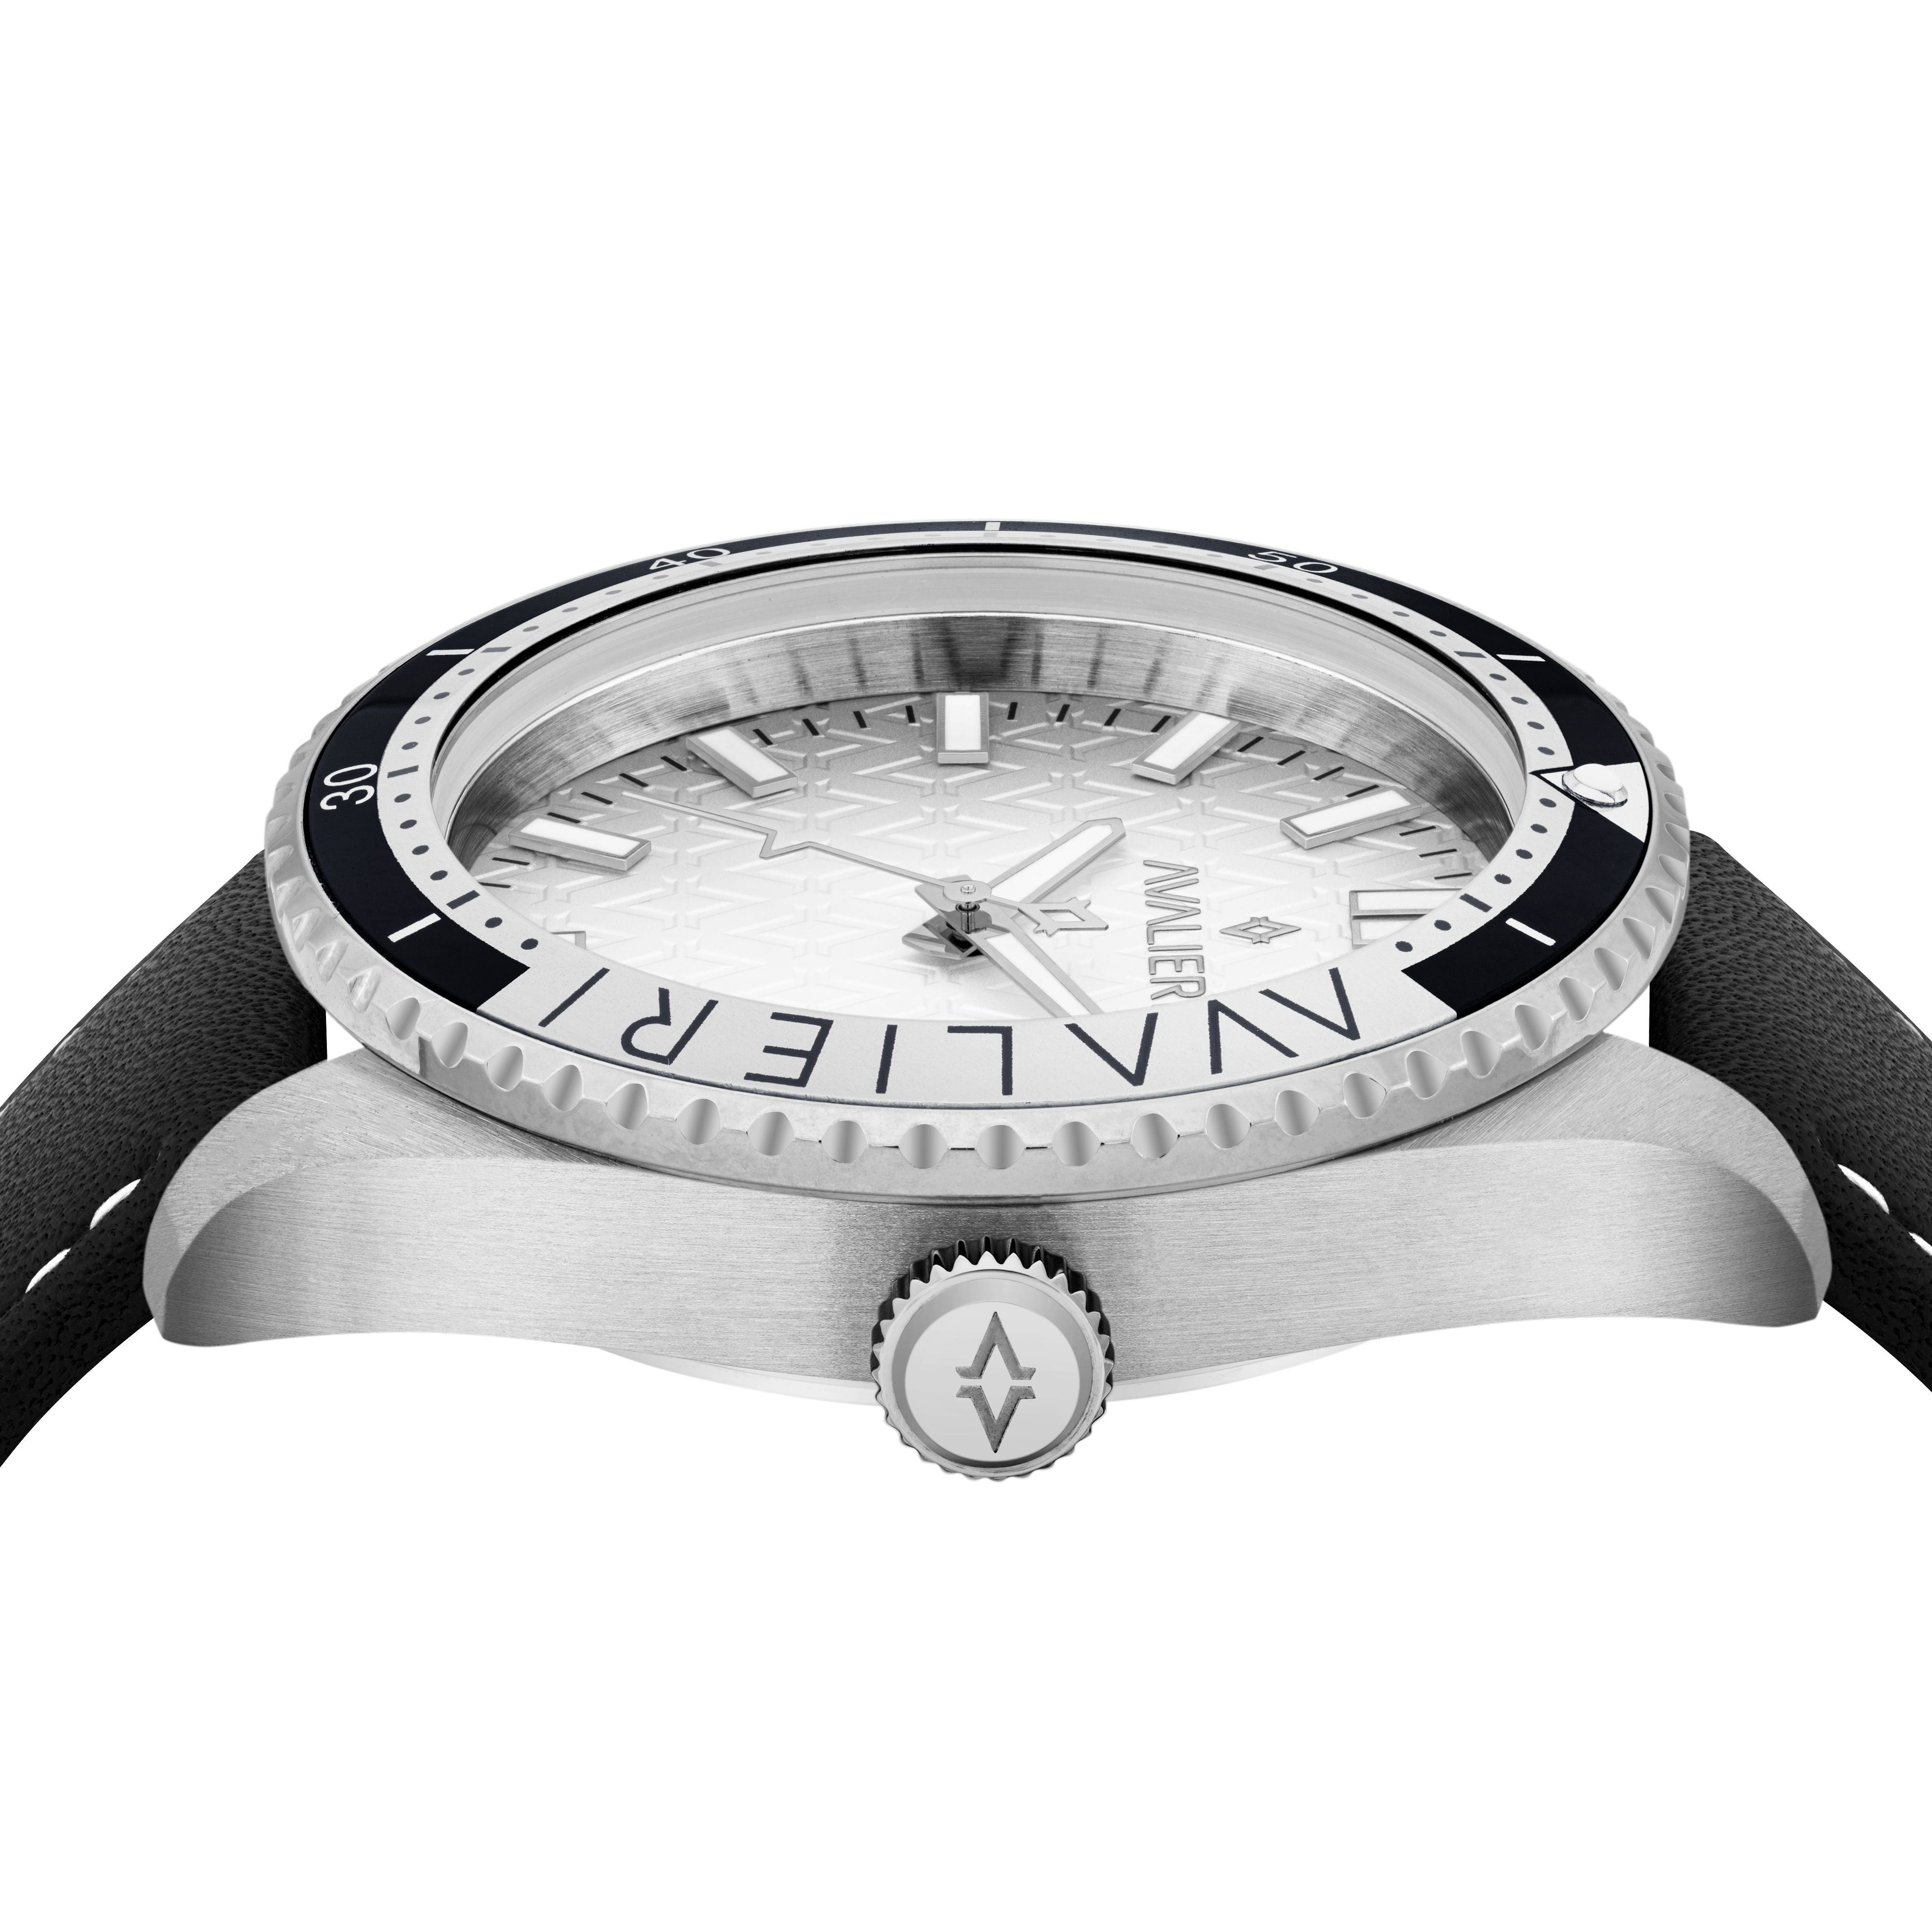 Avalieri Men's Quartz Watch Silver Dial - AV-2341B